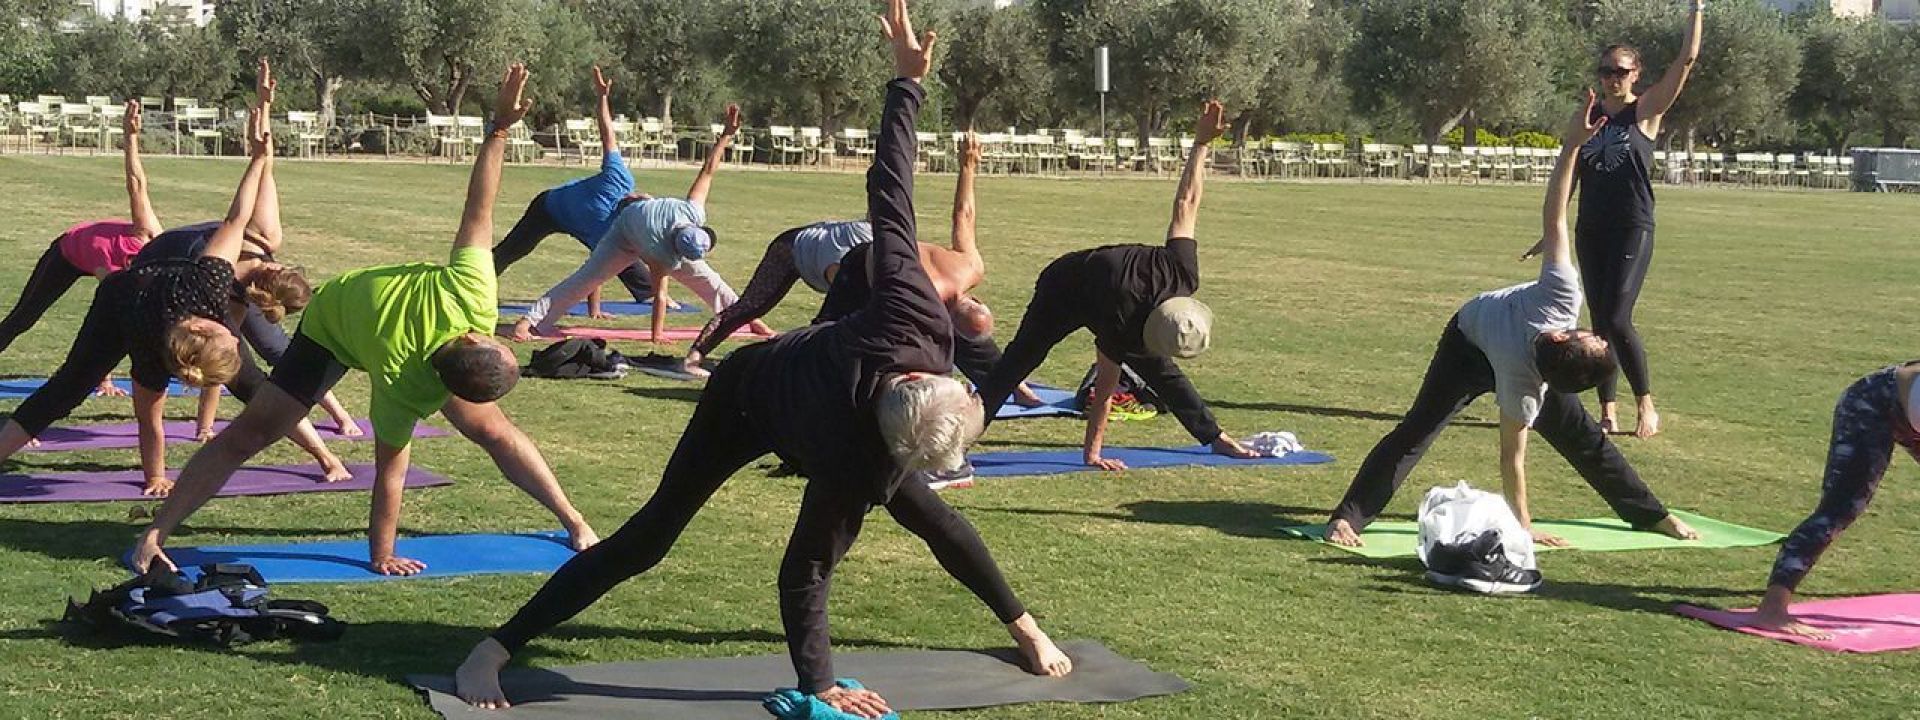 Φωτογραφία που απεικονίζει ανθρώπους να κάνουν Yoga